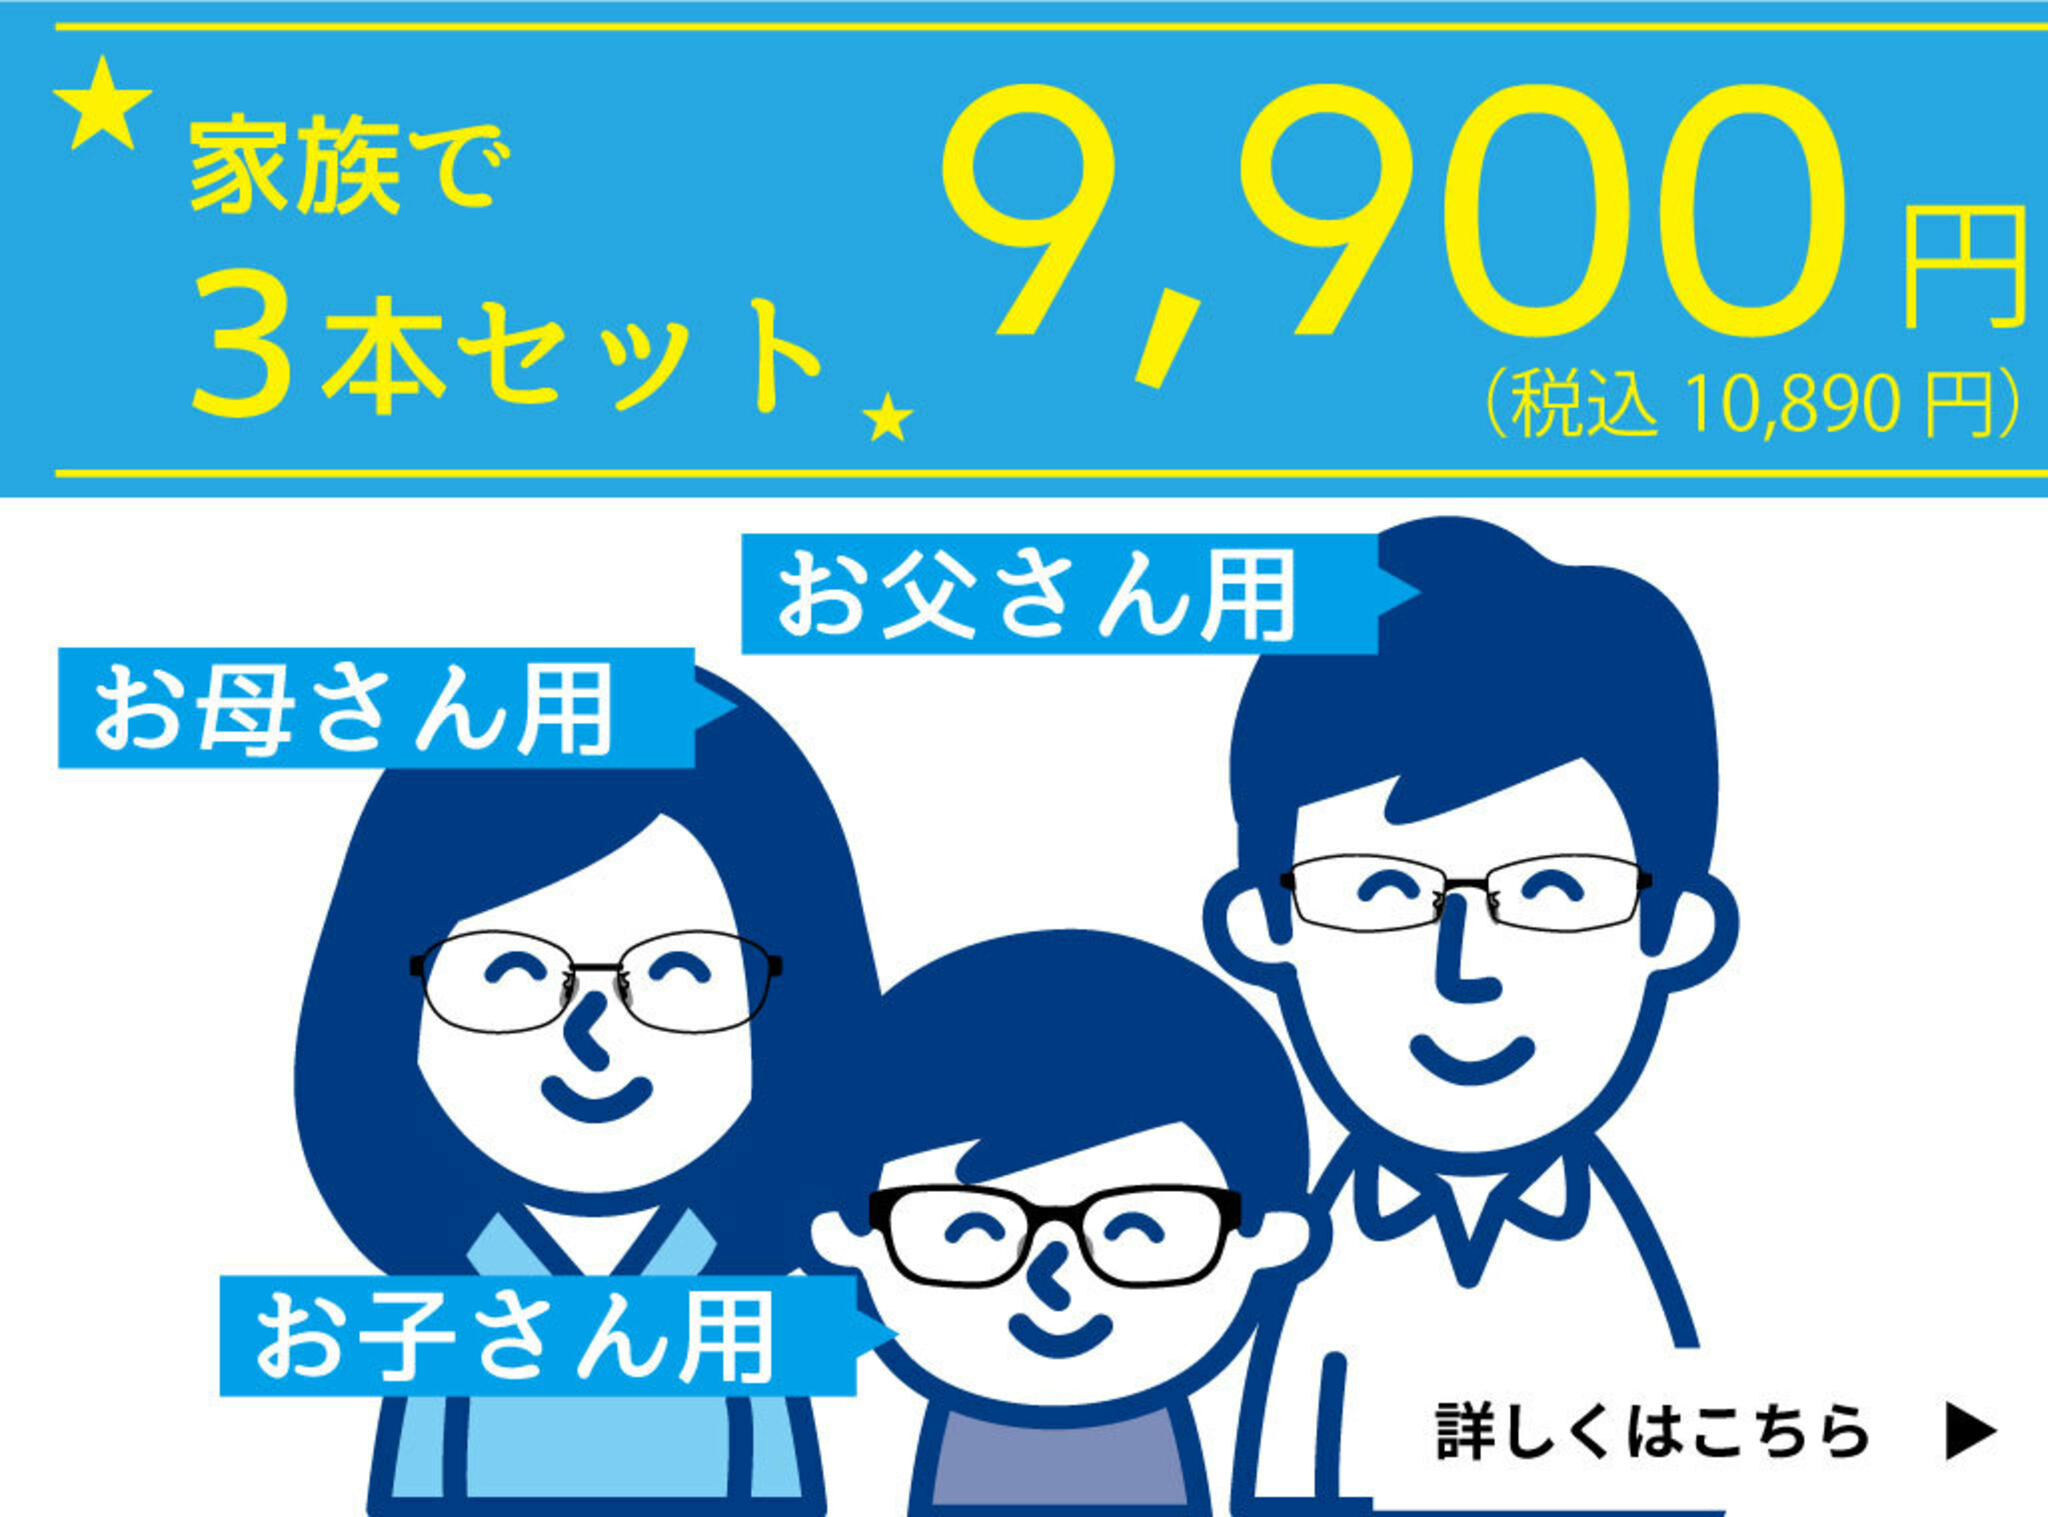 ドクターアイズ 兵庫加古川店からのお知らせ(家族で買えるメガネ3本セット )に関する写真